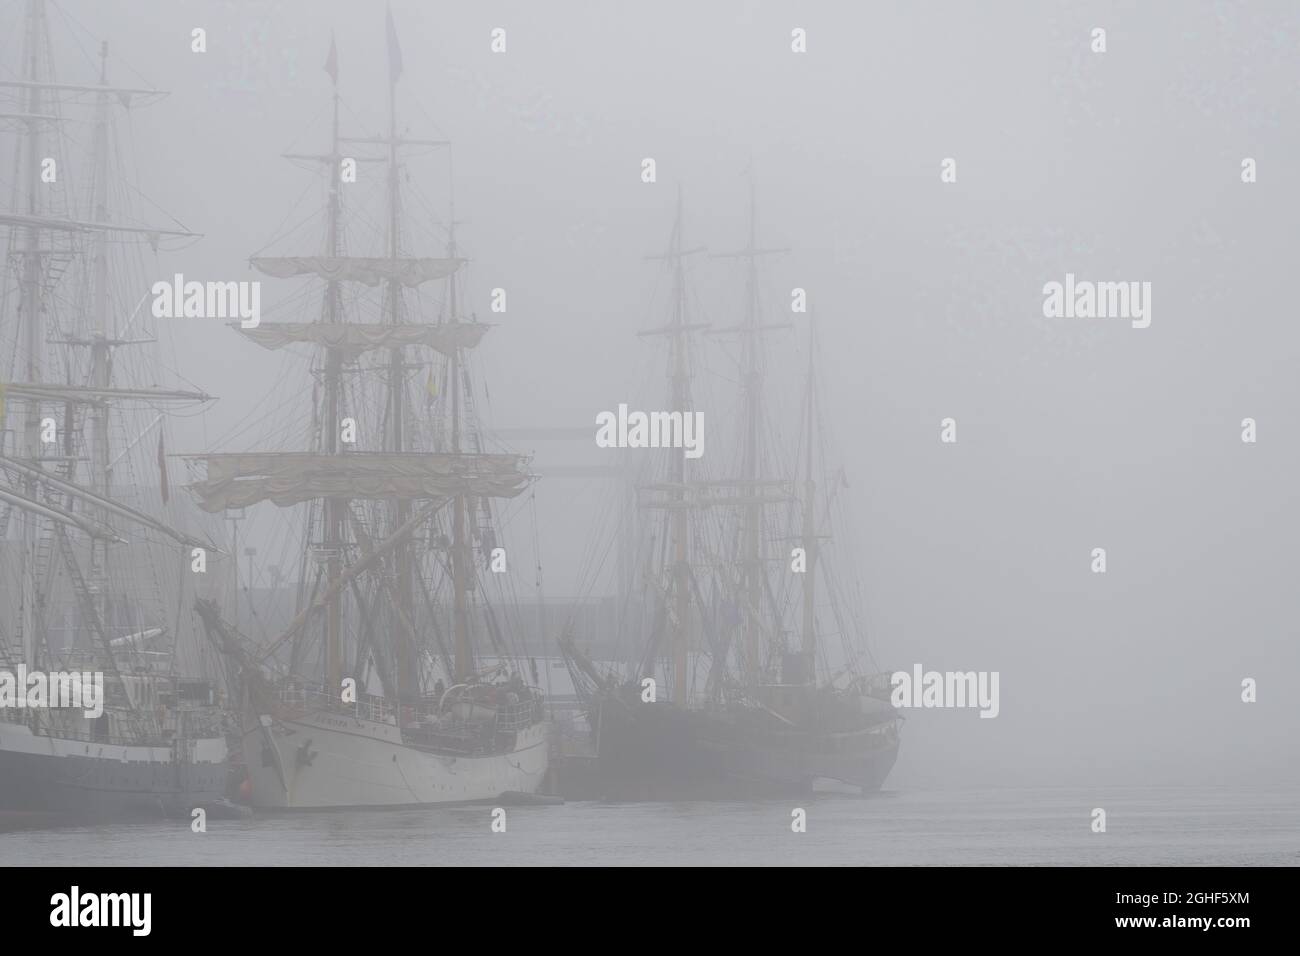 Saint John, NB, Kanada - hohe Schiffe dockten in Saint John Hafen auf einem nebligen Sagen. Nebel ist dicht und verbirgt teilweise die thee Schiffe. Stockfoto